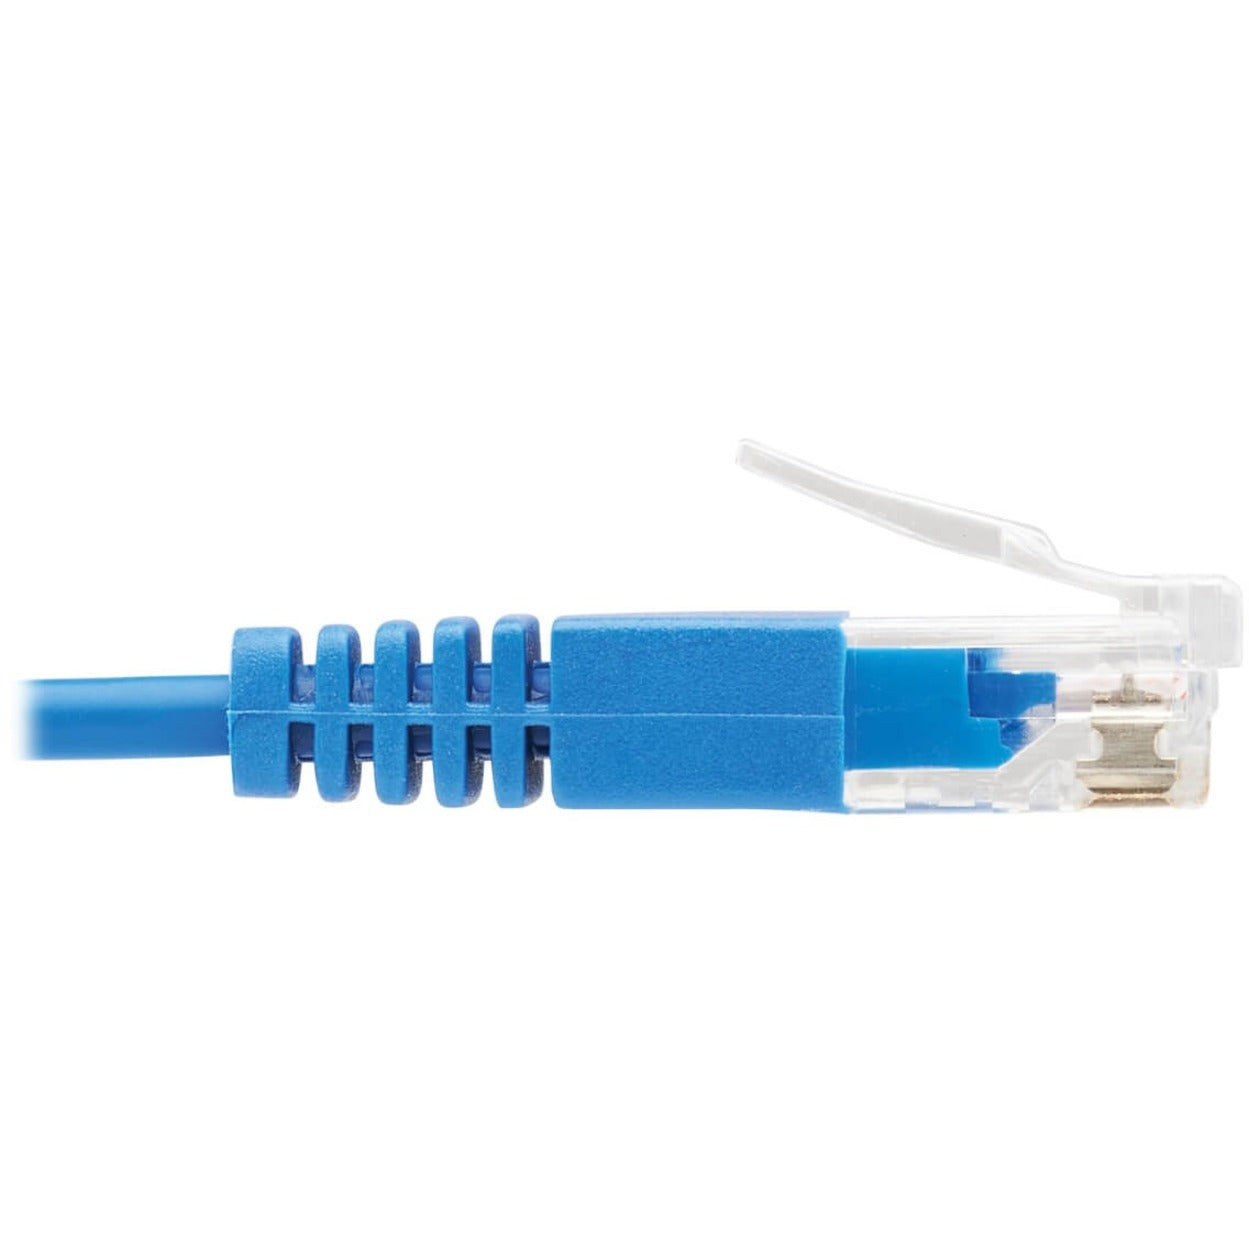 Tripp Lite N200-UR05-BL Cat6 Ultra-Slim Ethernet Cable, Blue, 5 ft.